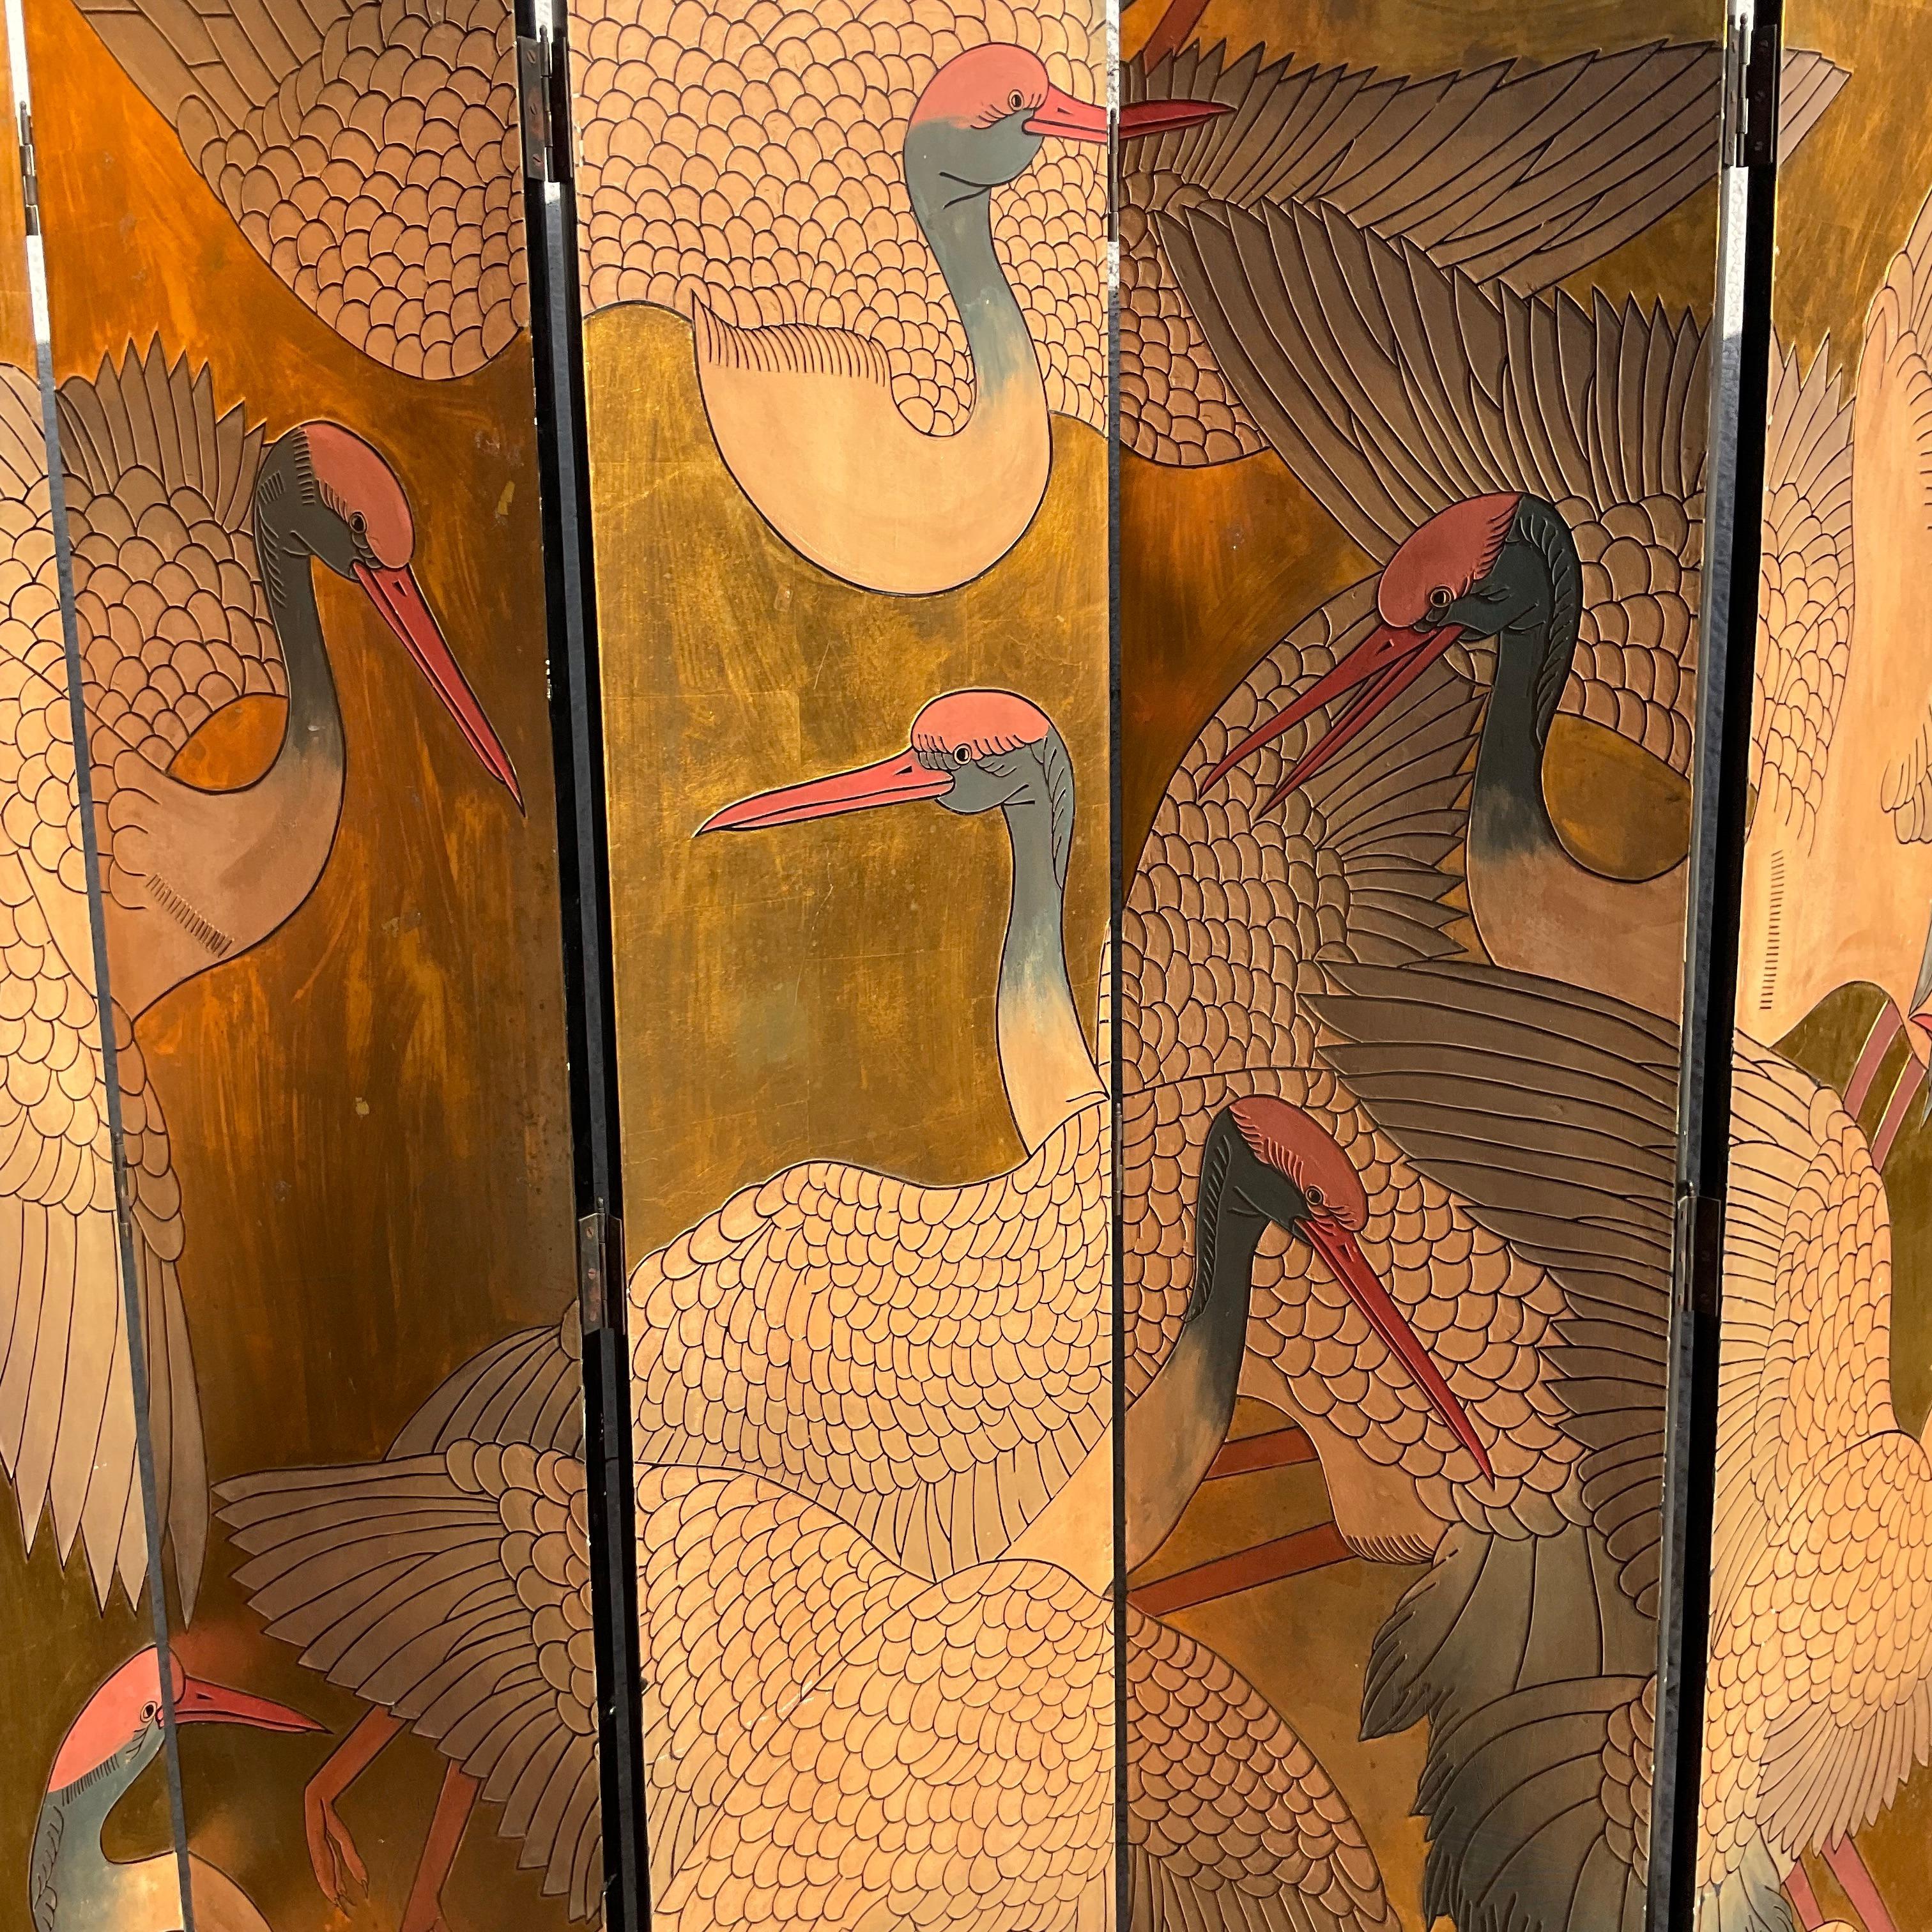 Ein unglaublicher asiatischer Paravent im Vintage-Stil. Eine atemberaubende Komposition von fliegenden Kranichen auf einem glänzenden Goldhintergrund. Monumental in Größe und Dramatik. Erworben aus einem Nachlass in Palm Beach.